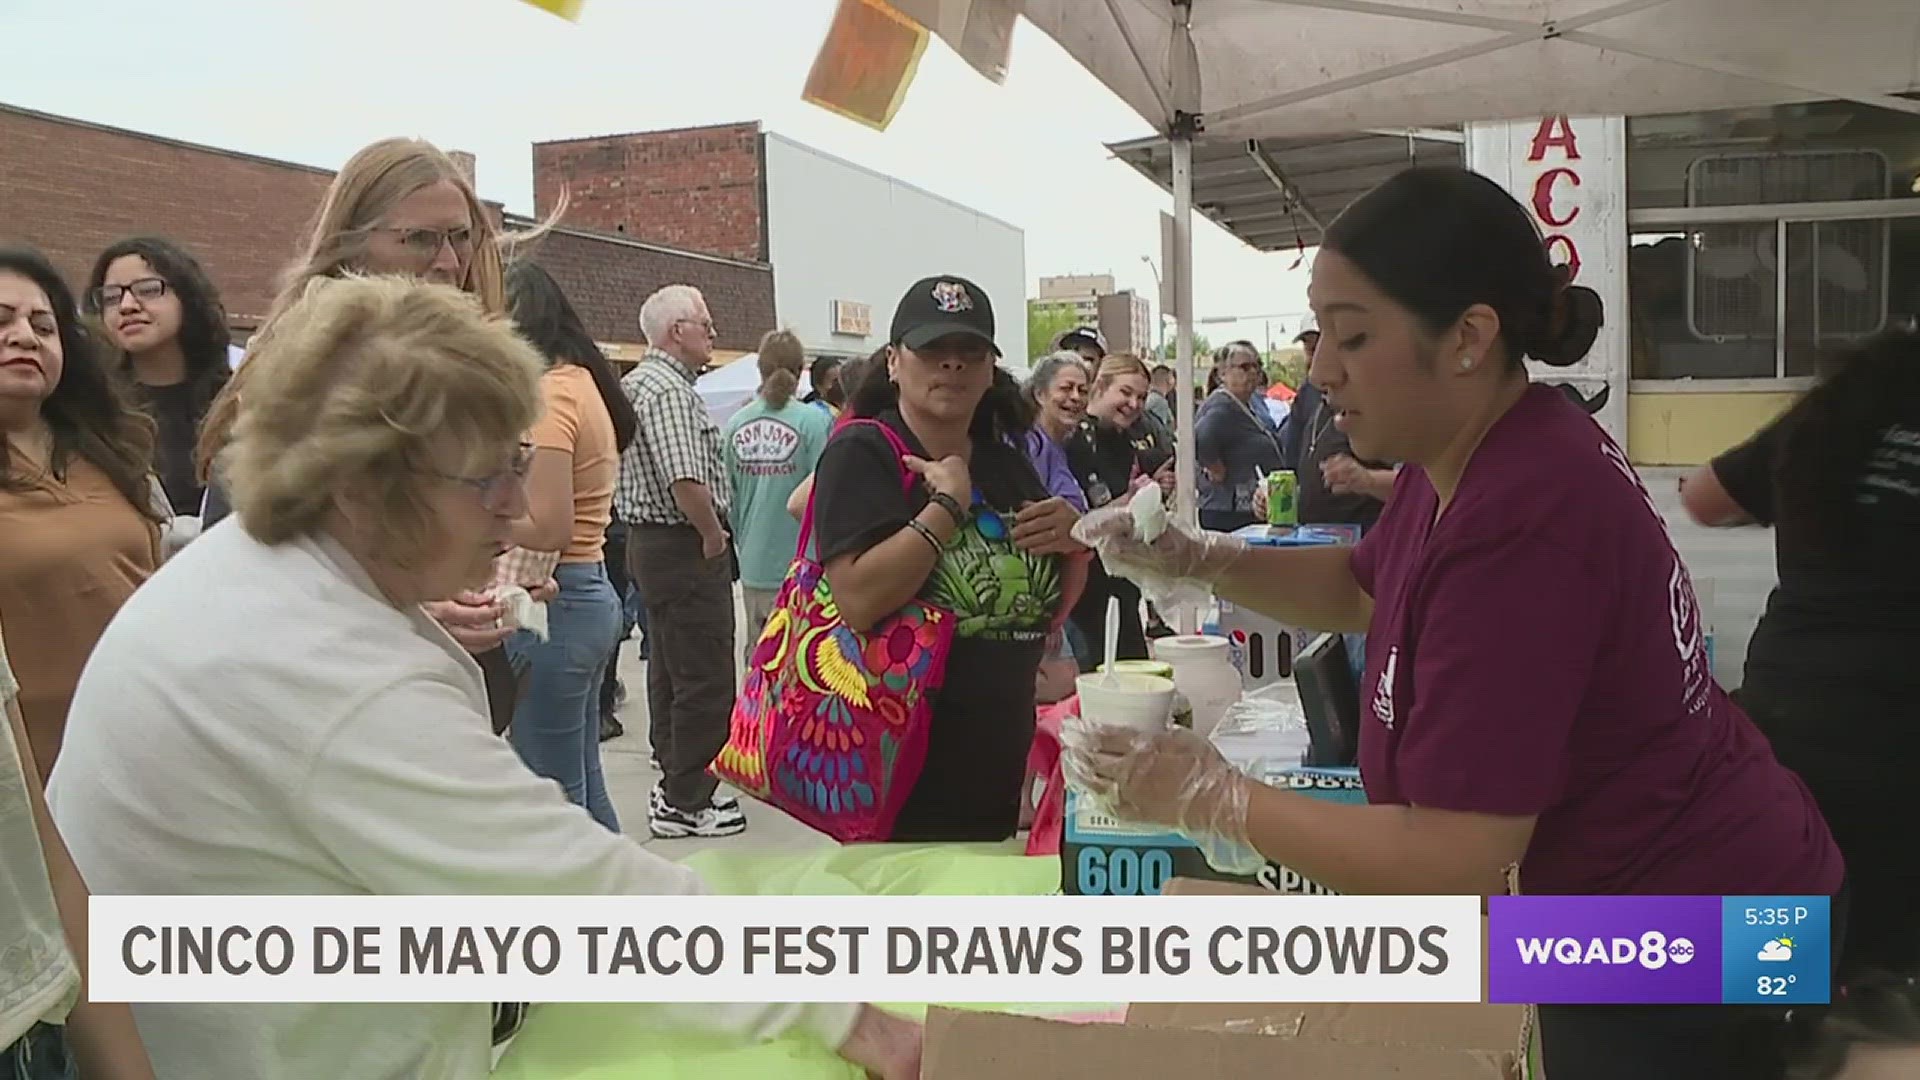 Celebrating Cinco De Mayo, more than 60 vendors serviced an estimated 3,000 guests, according to the event's organizer, Graciela Macias.